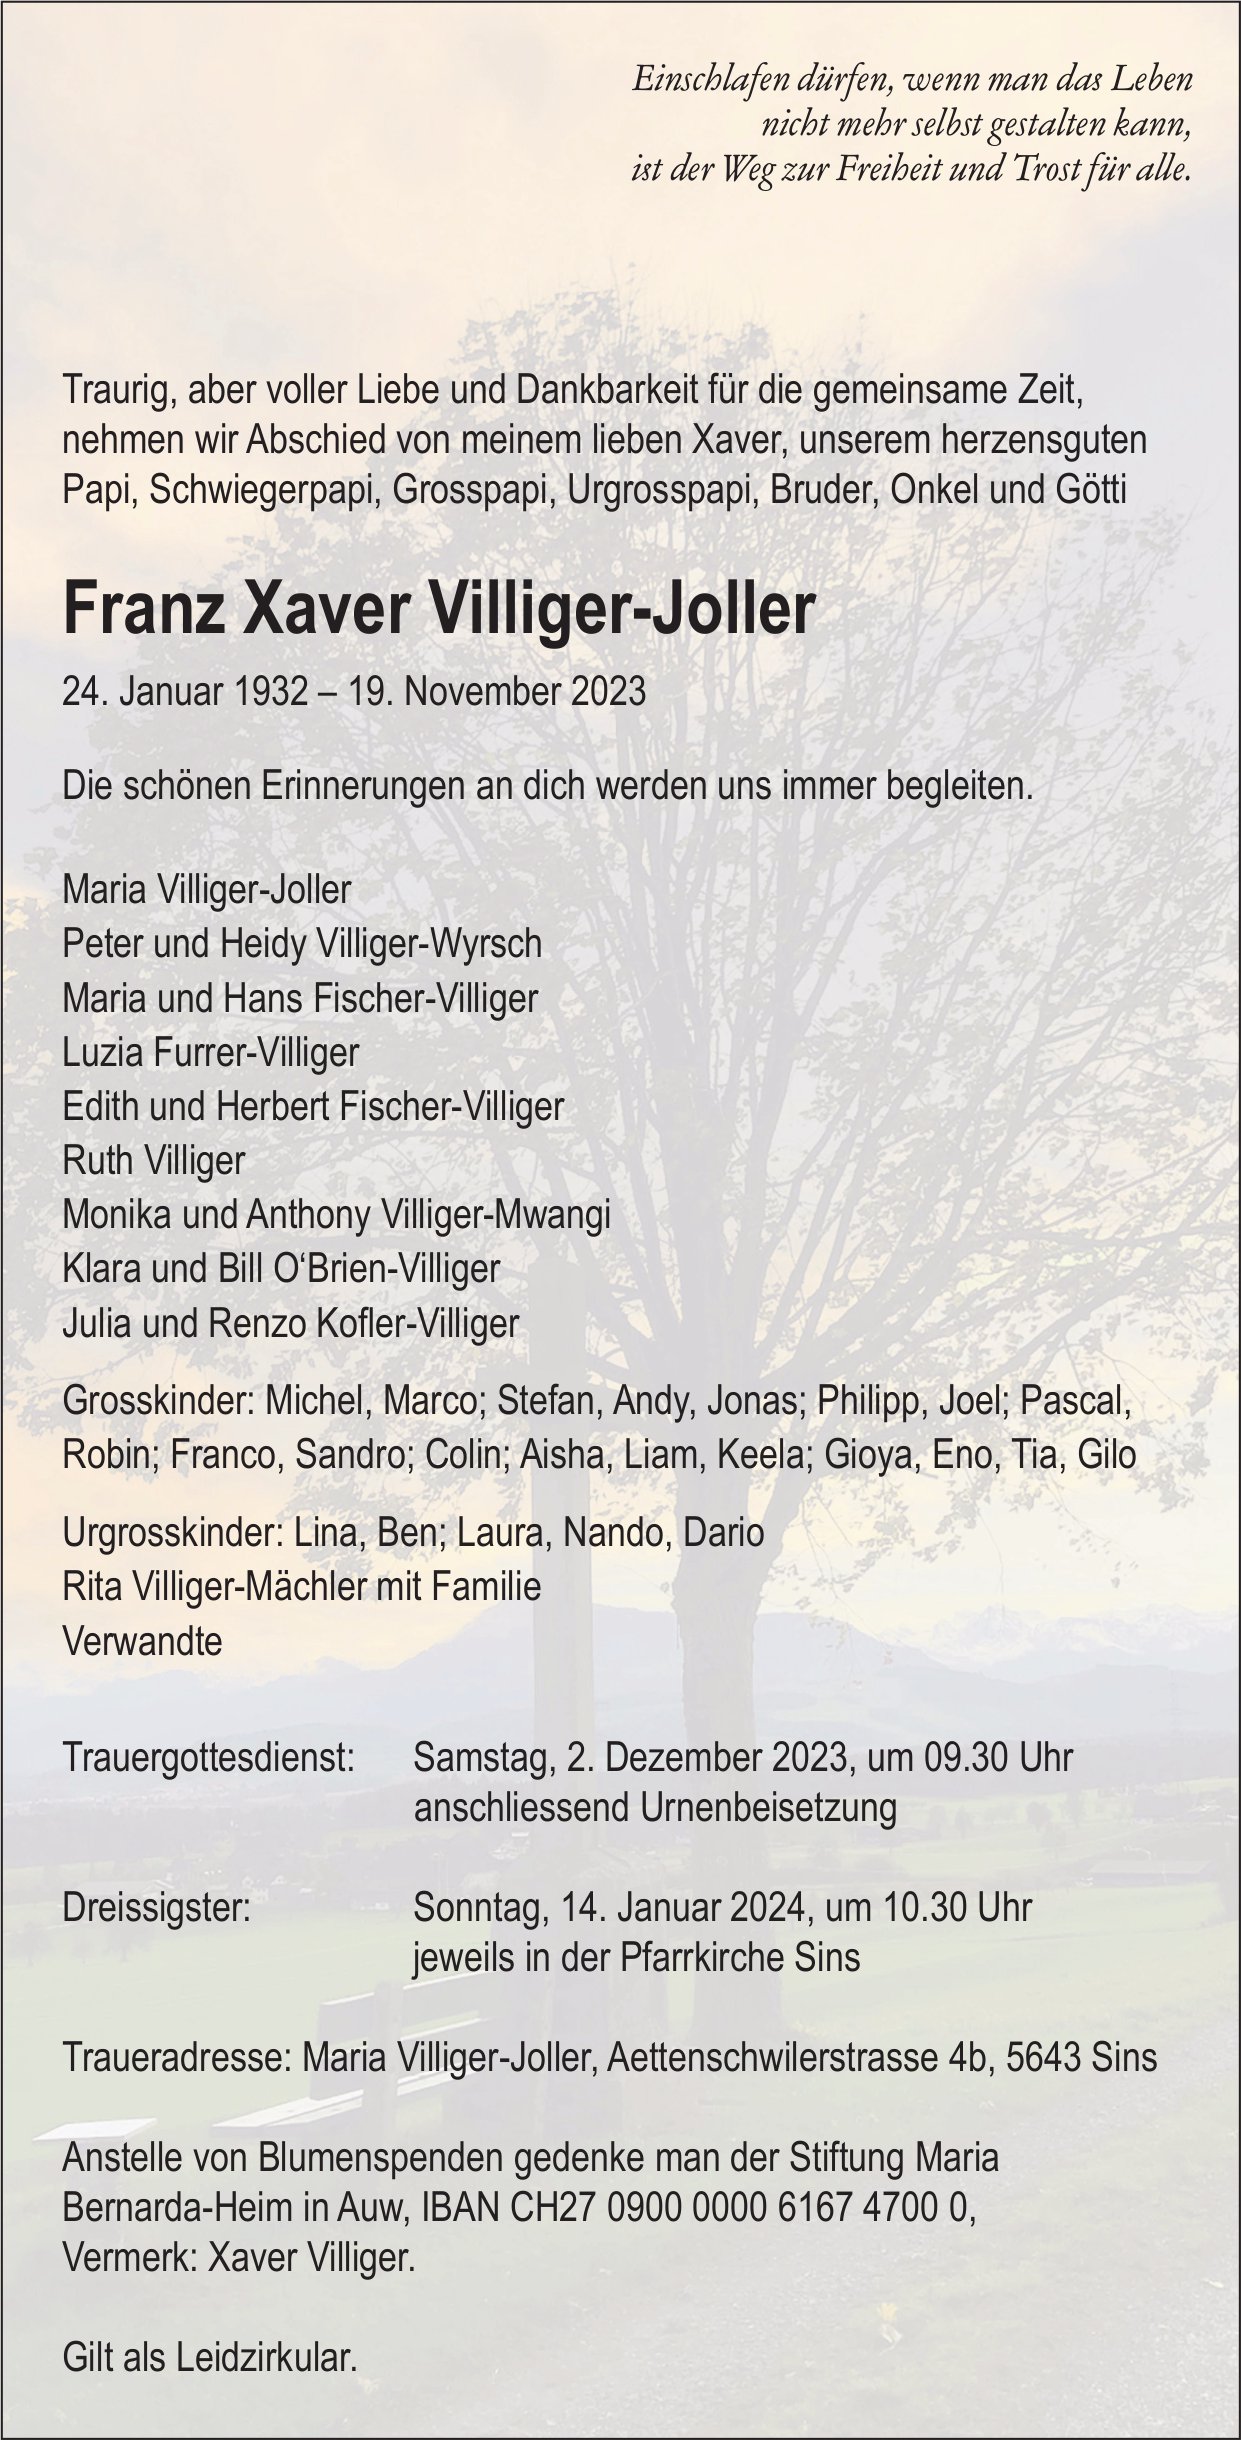 Villiger-Joller Franz Xaver, November 2023 / TA